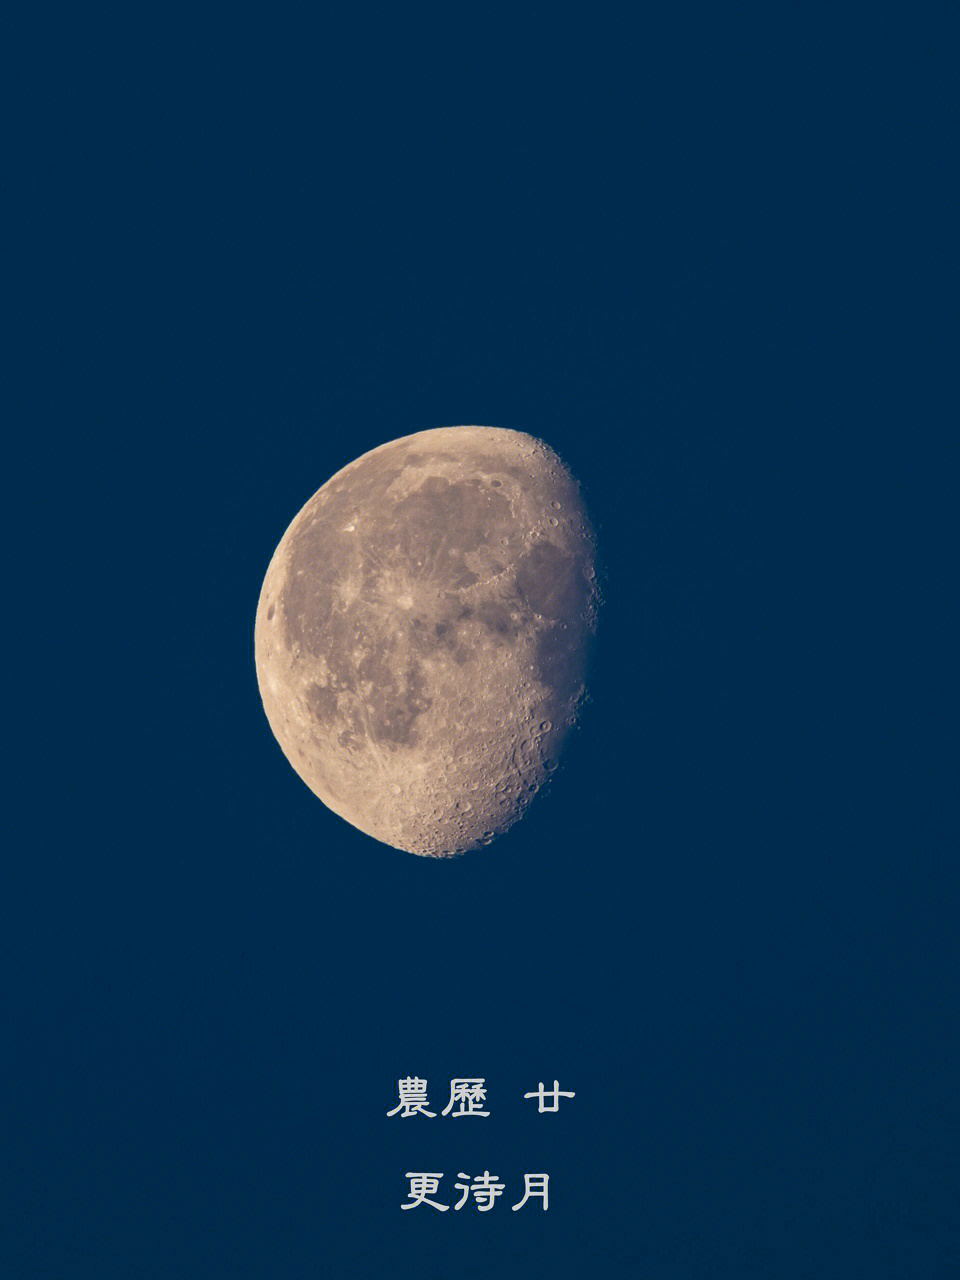 26615初五的月亮叫做弓张月,是处于蛾眉月与上弦月之间的月相.